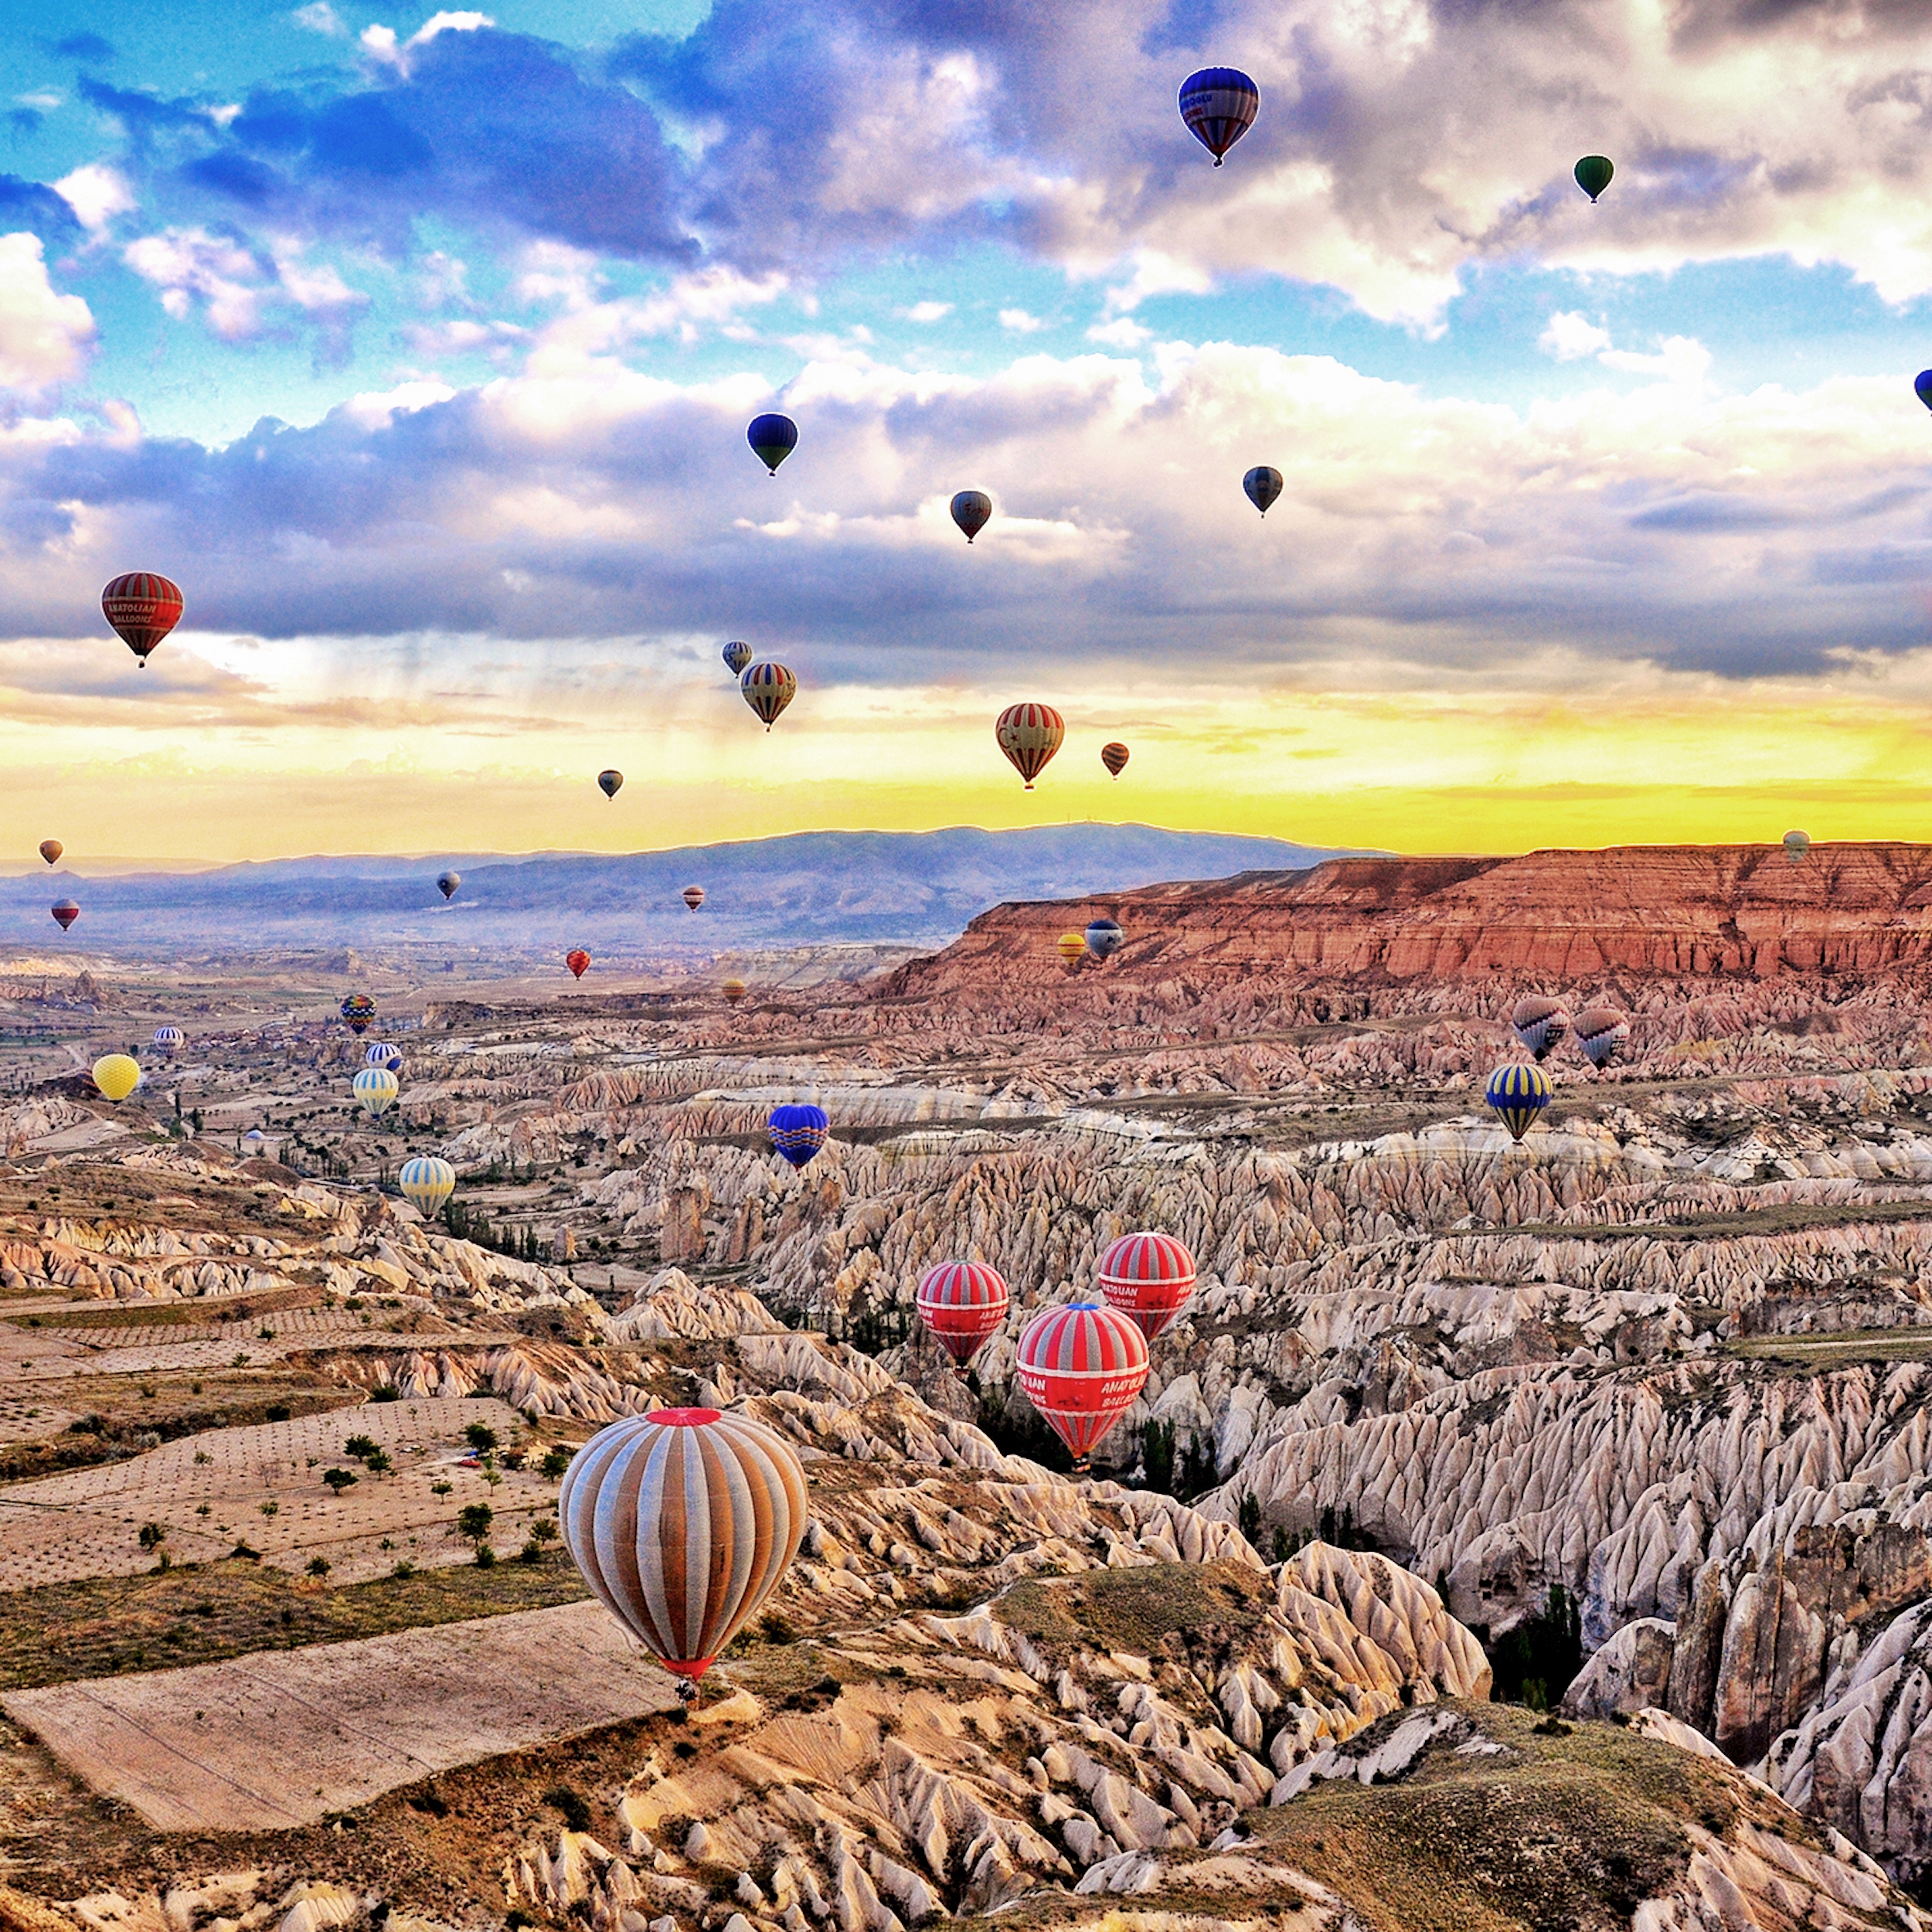 絶景 気球から見るカッパドキア カッパドキア トルコ のお得なオプショナルツアー Hisgo トルコ